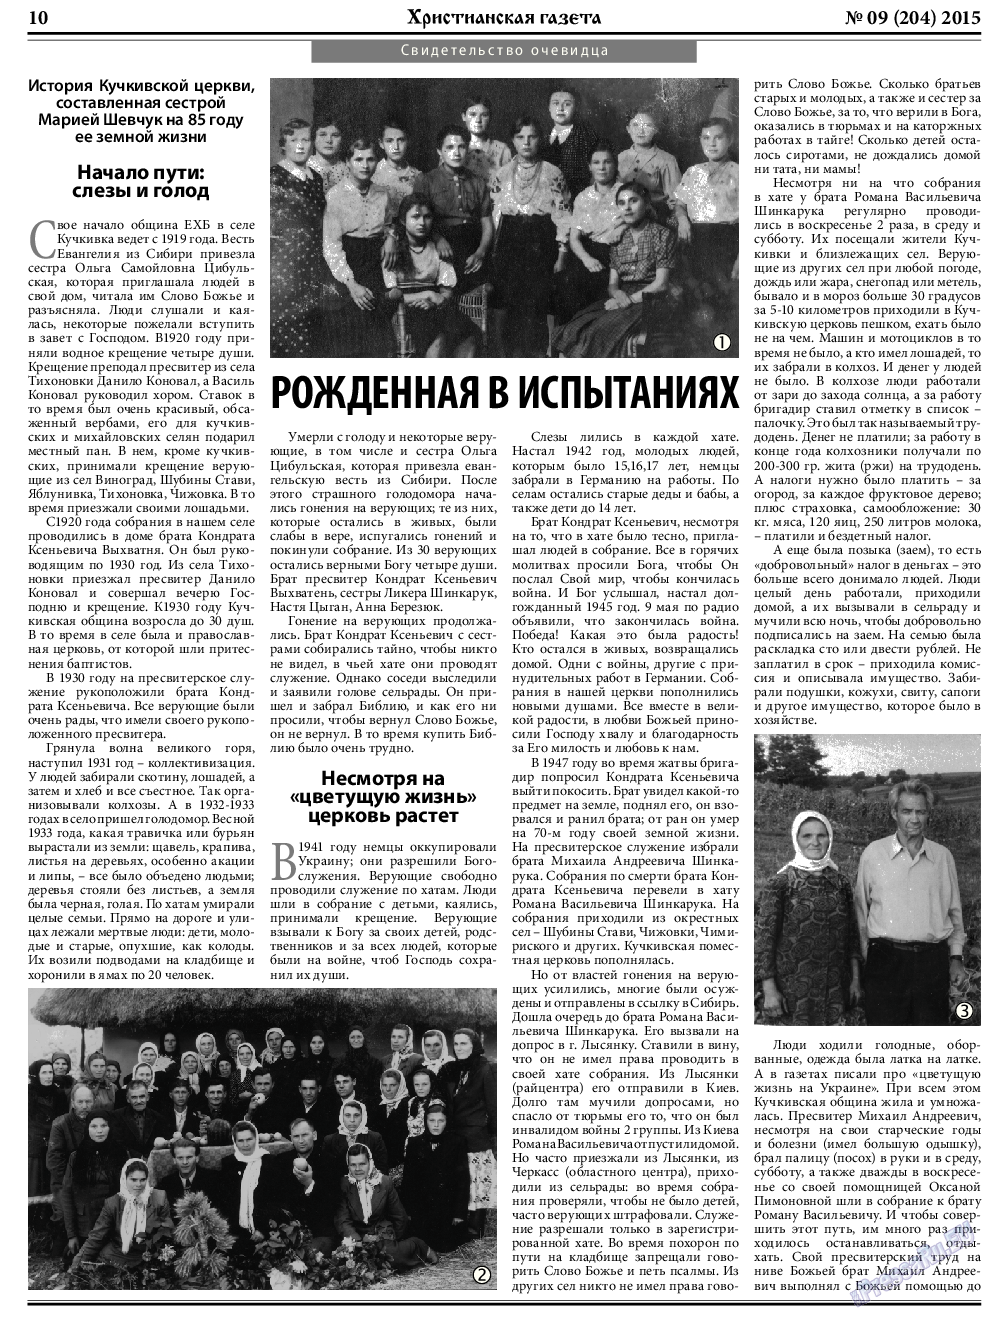 Христианская газета, газета. 2015 №9 стр.10